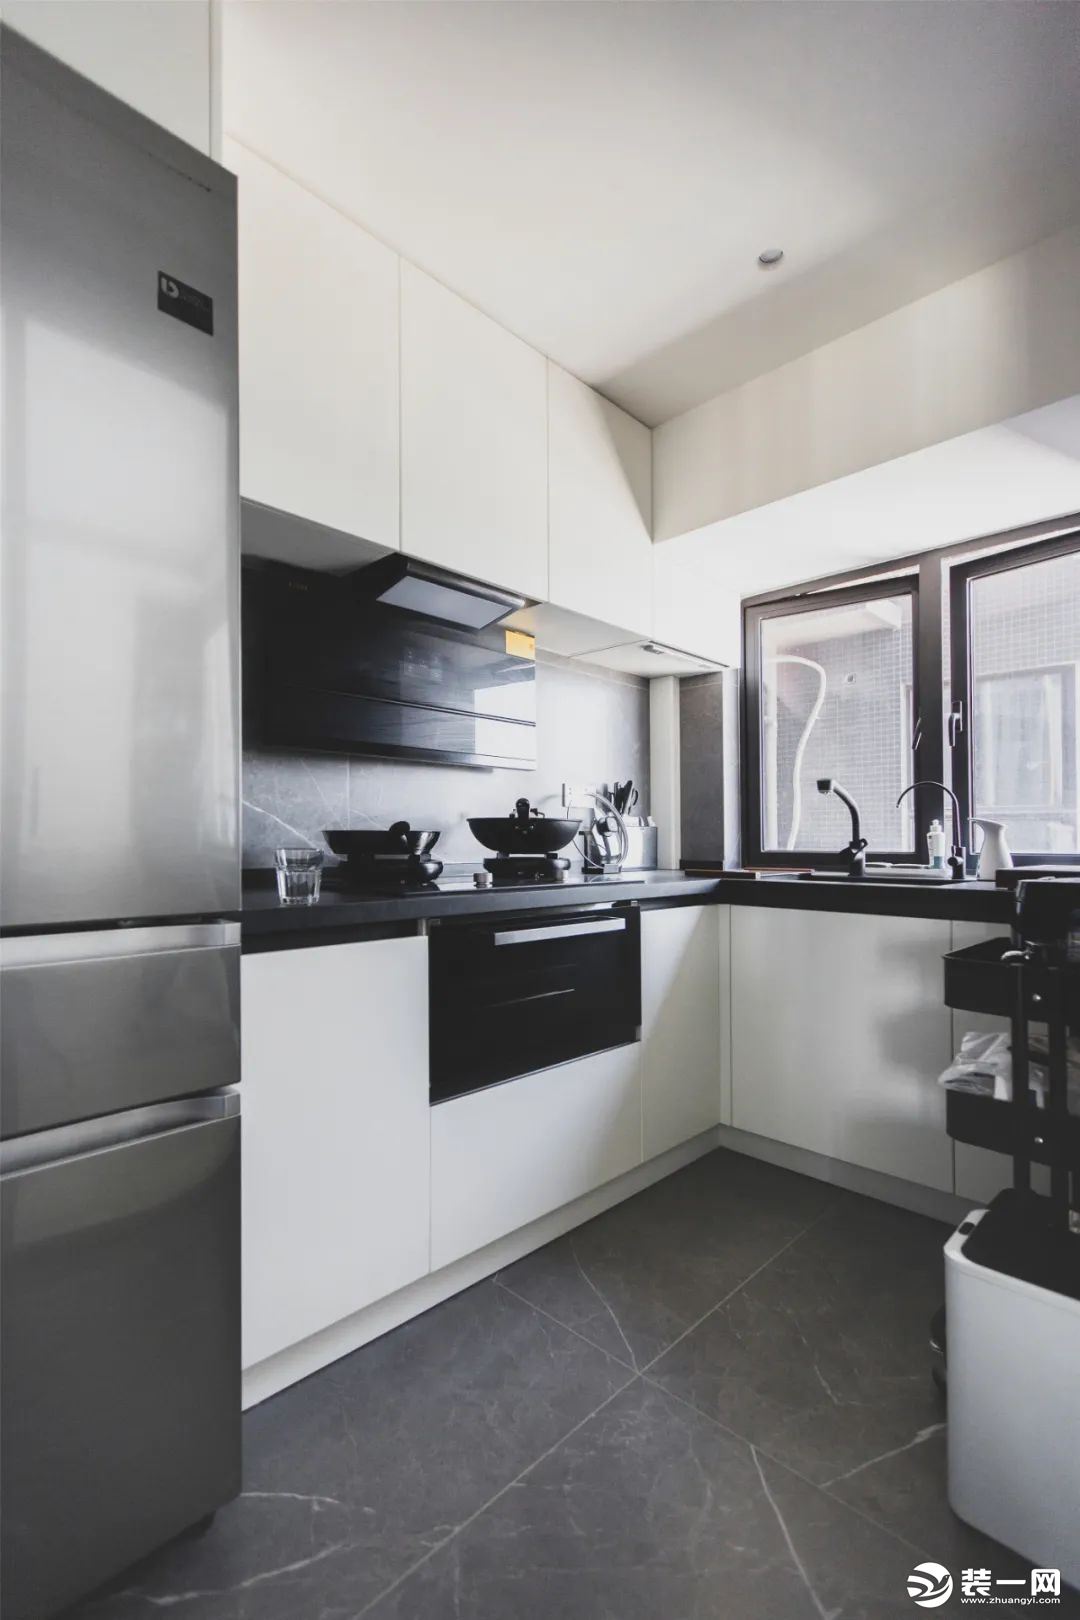 厨房，经典的黑白灰搭配，看上去简洁时尚。采用了L型的橱柜布局，并将冰箱嵌入进去，空间的极致利用。